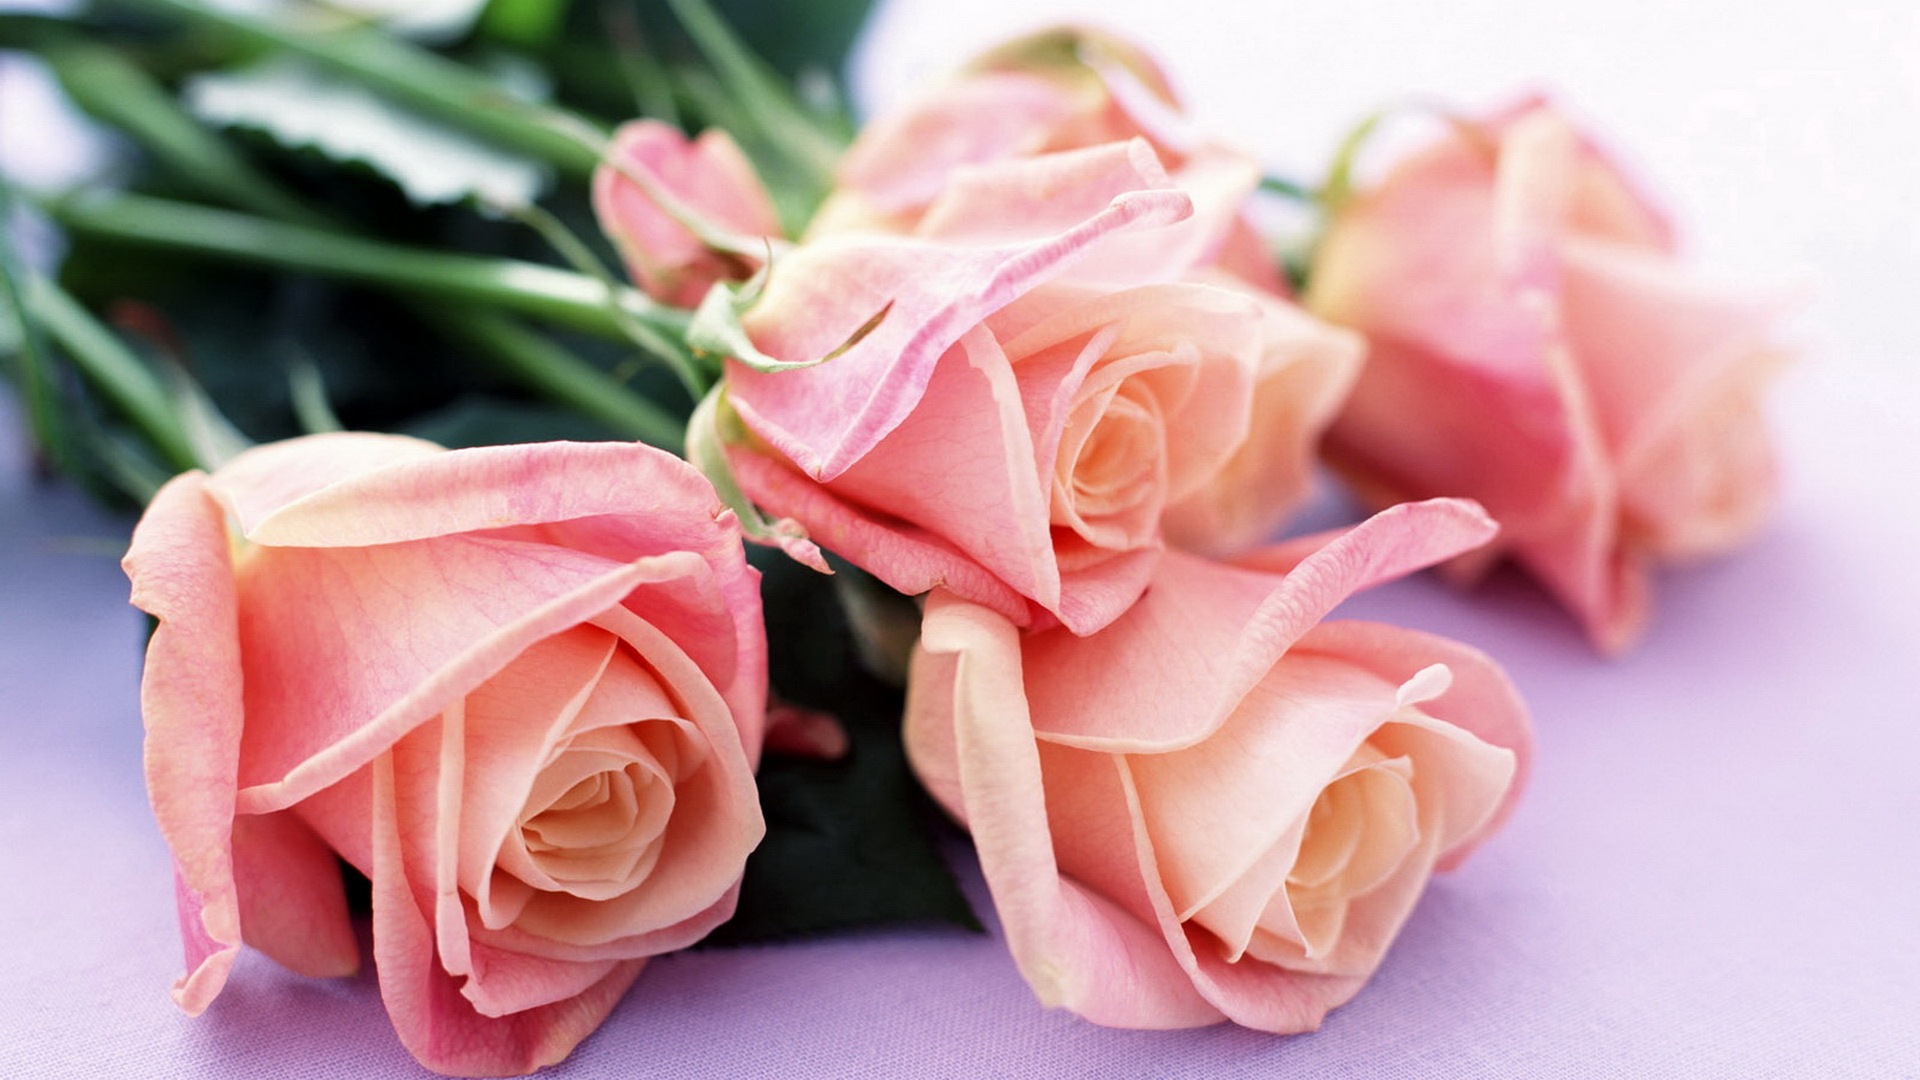 Hoa hồng đã từ lâu trở thành biểu tượng cho sự tình yêu và sự lãng mạn. Hãy cùng chiêm ngưỡng bộ sưu tập hoa hồng đẹp và phong phú, chắc chắn sẽ khiến bạn yêu thích từ cái nhìn đầu tiên. Hình ảnh này đầy nghệ thuật sẽ chắc chắn khiến bạn không thể bỏ lỡ.